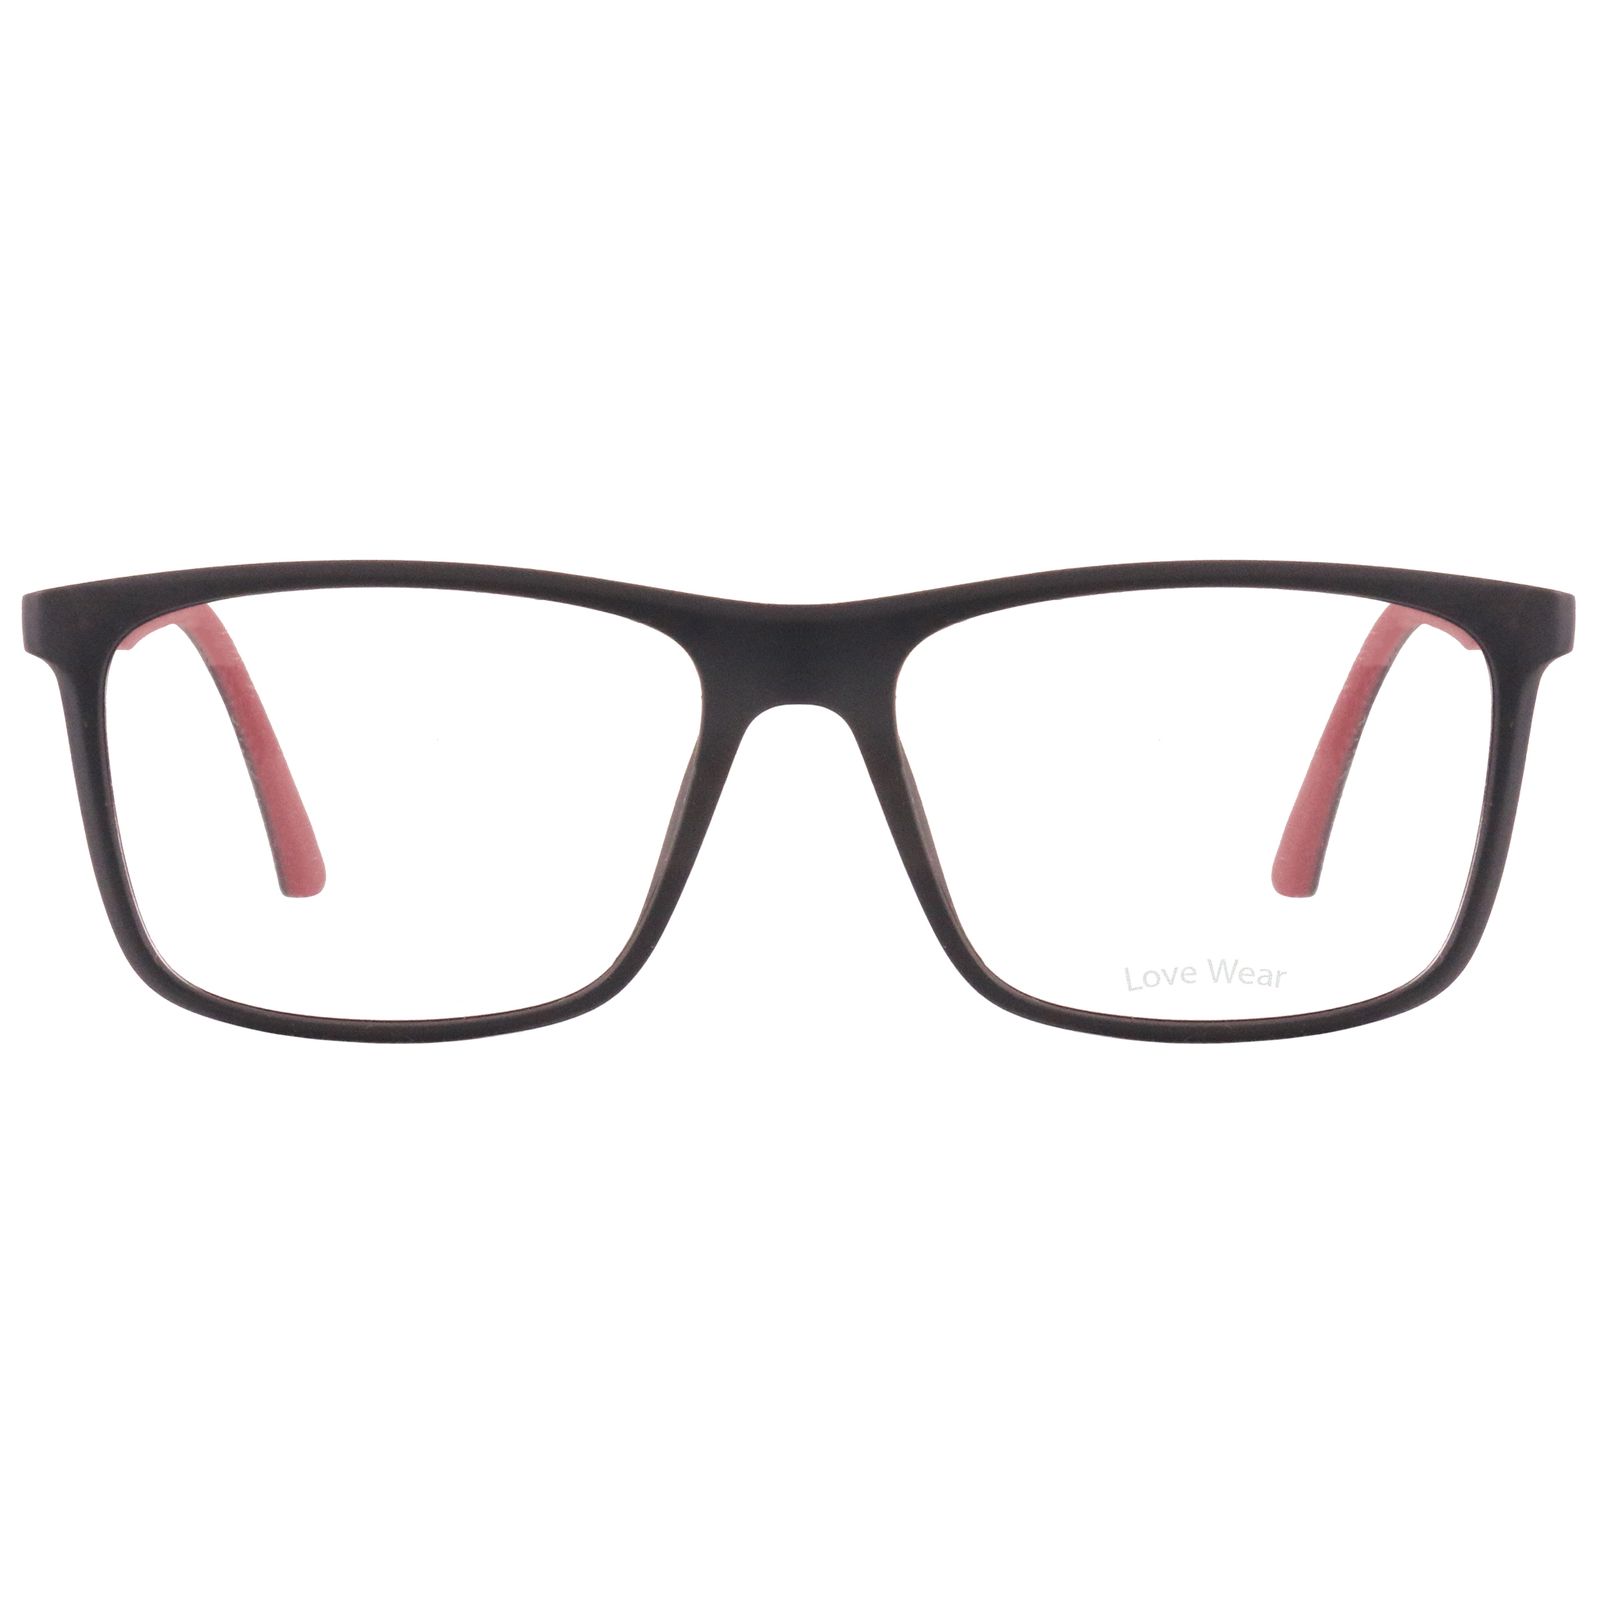 فریم عینک طبی لاو ور مدل 2023-C2 -  - 2